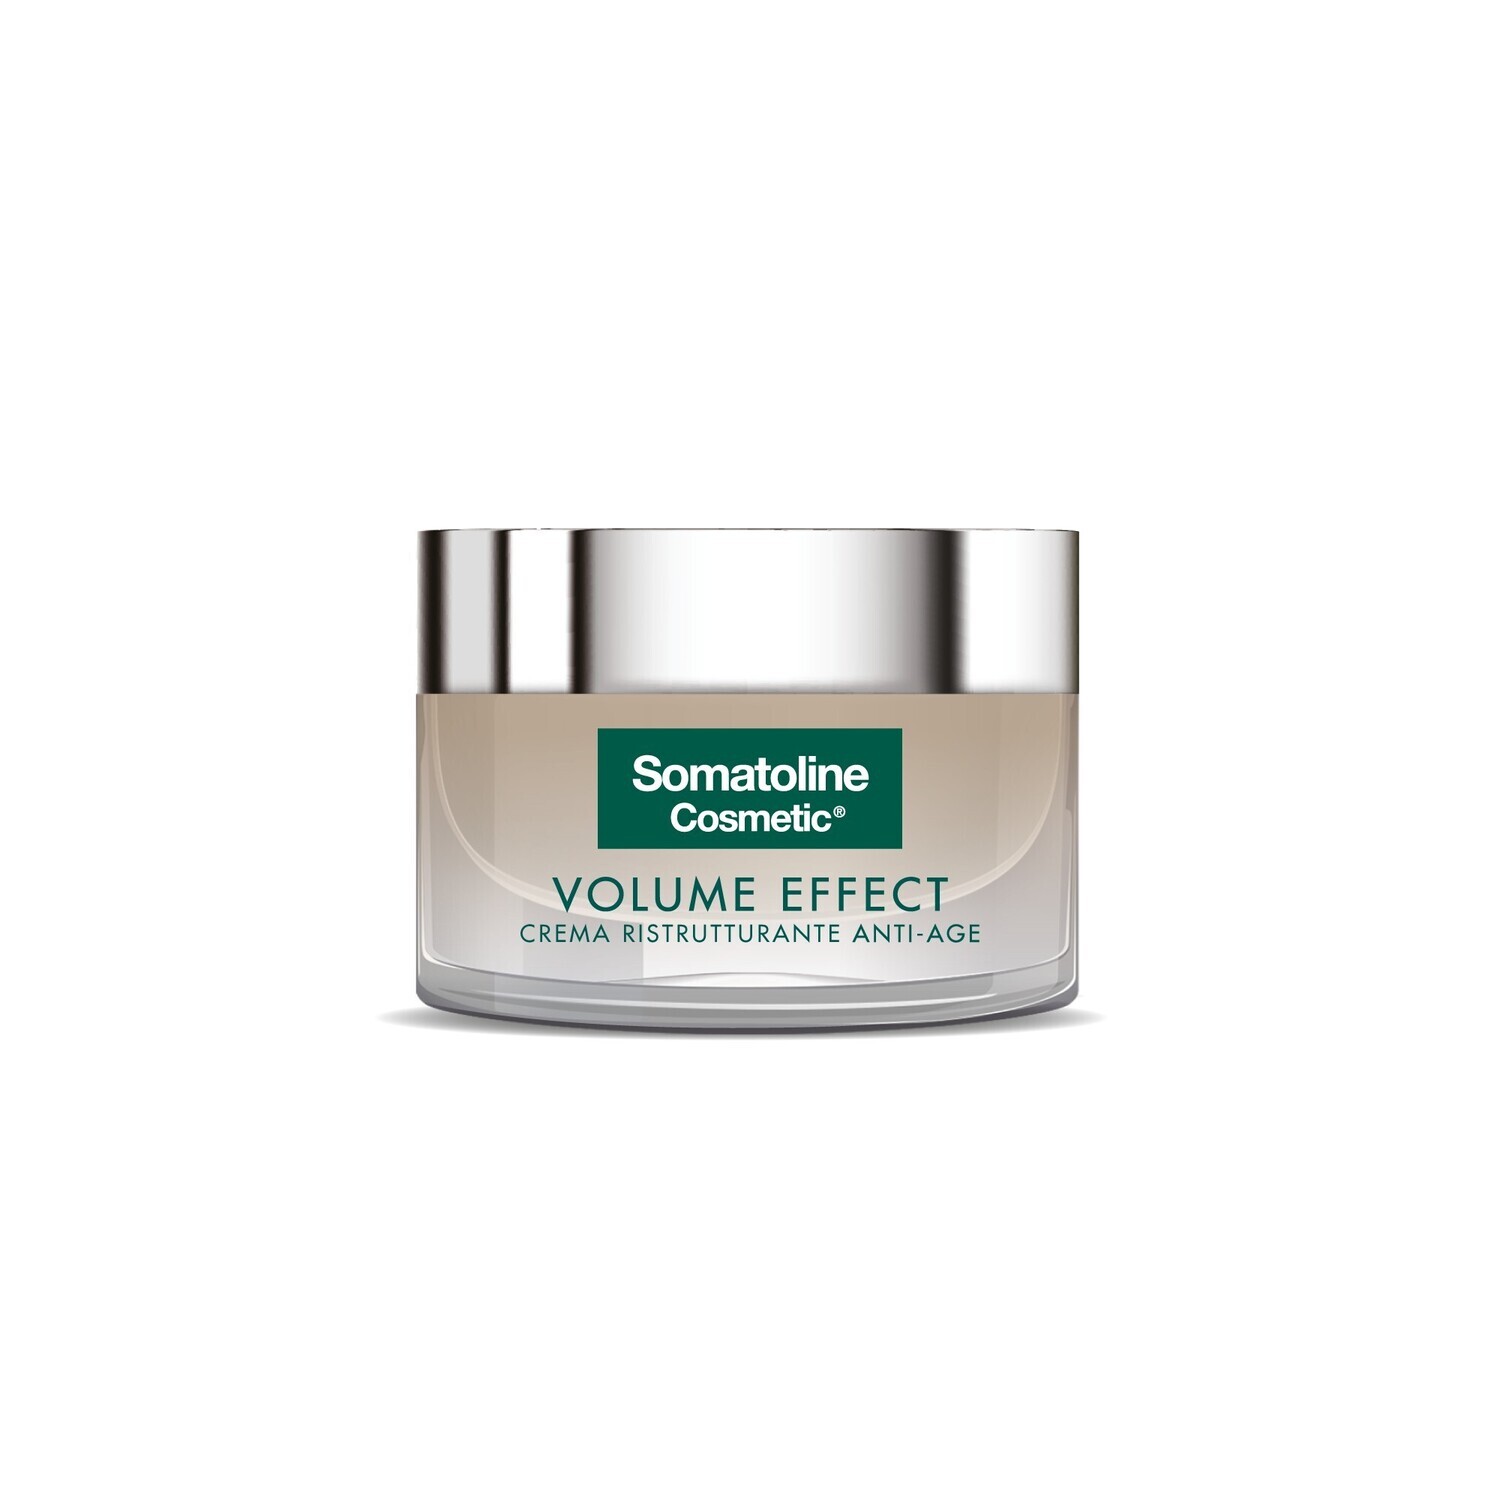 Somatoline Cosmetic Volume Effect Crema Ristrutturante Anti-Age